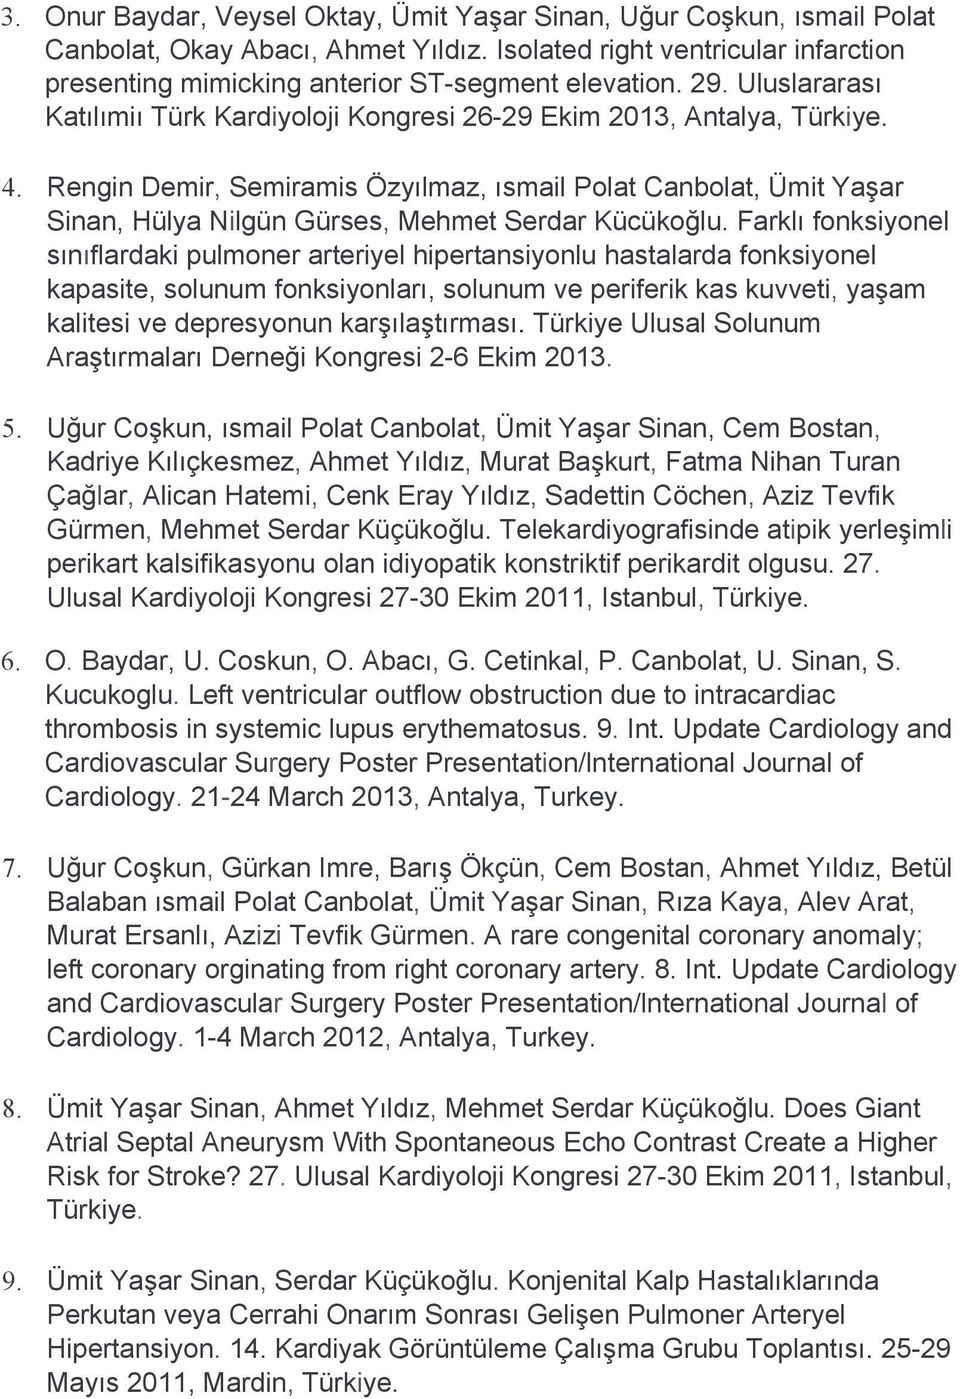 Rengin Demir, Semiramis Özyılmaz, ısmail Polat Canbolat, Ümit Yaşar Sinan, Hülya Nilgün Gürses, Mehmet Serdar Kücükoğlu.